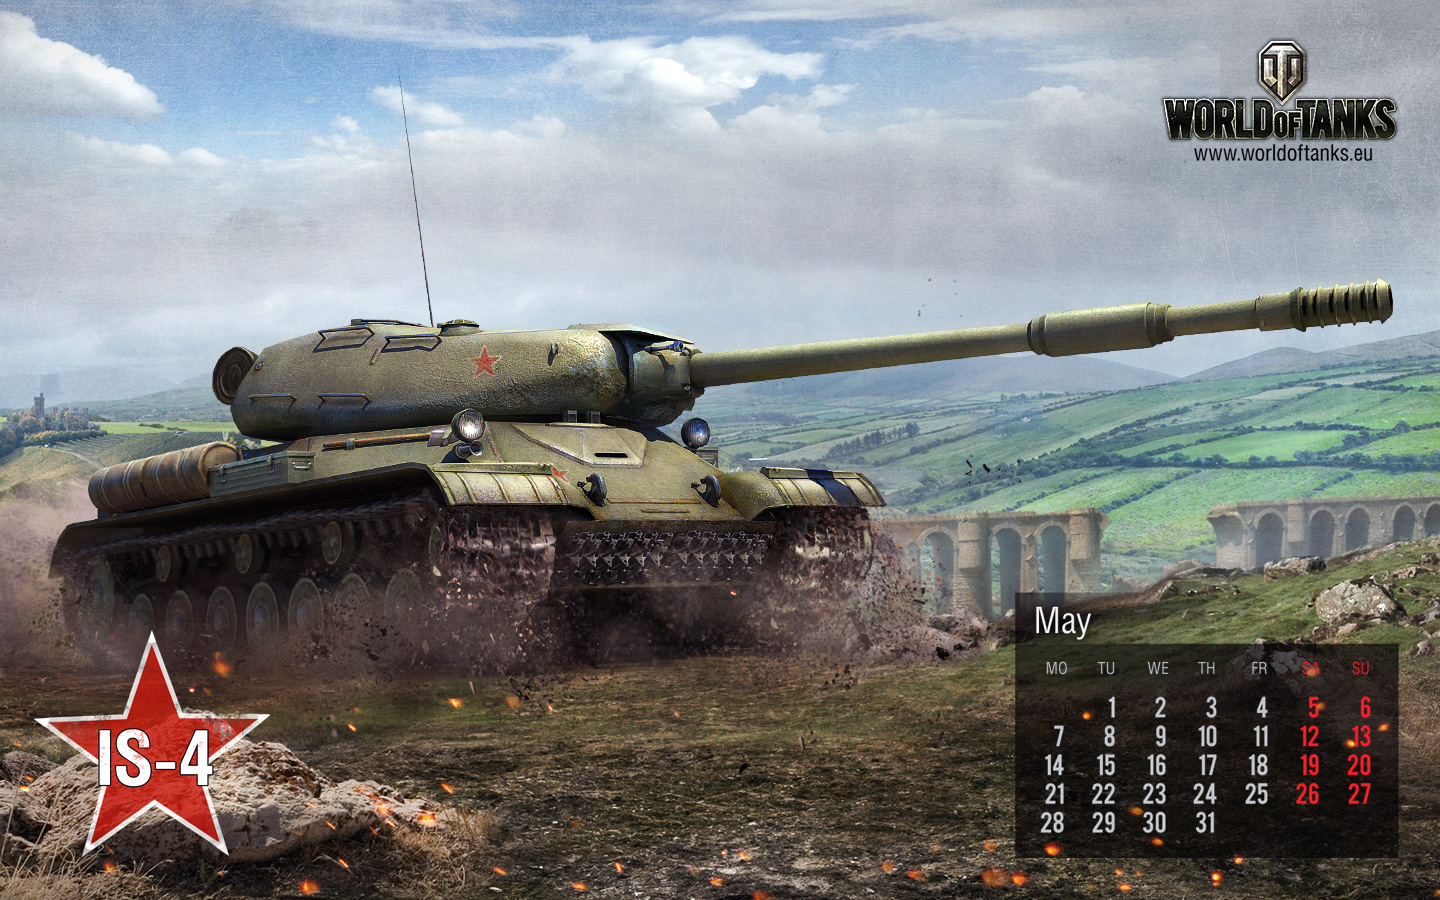 May calendar | Танки - медиа World of Tanks, самые лучшие ролики и сюжеты